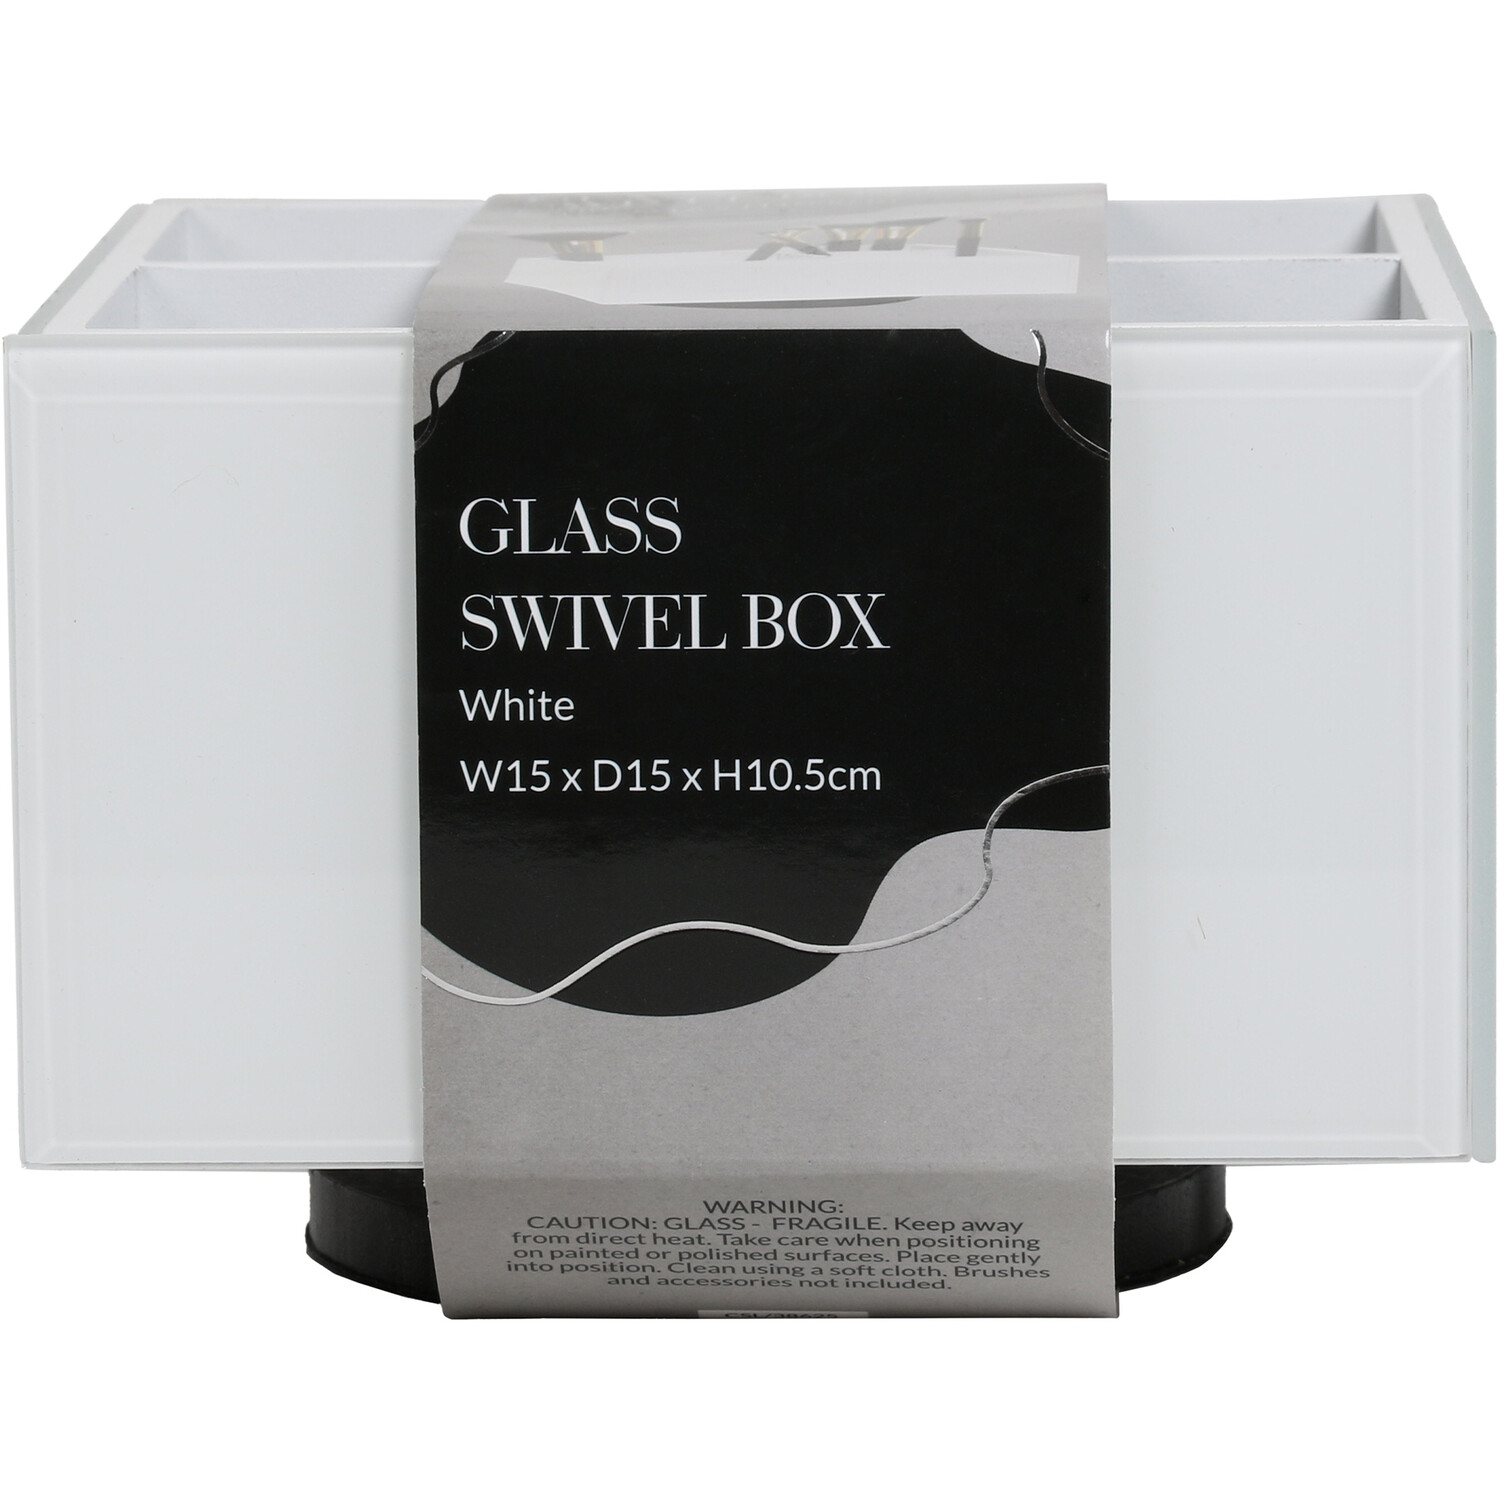 Glass Swivel Box Image 2